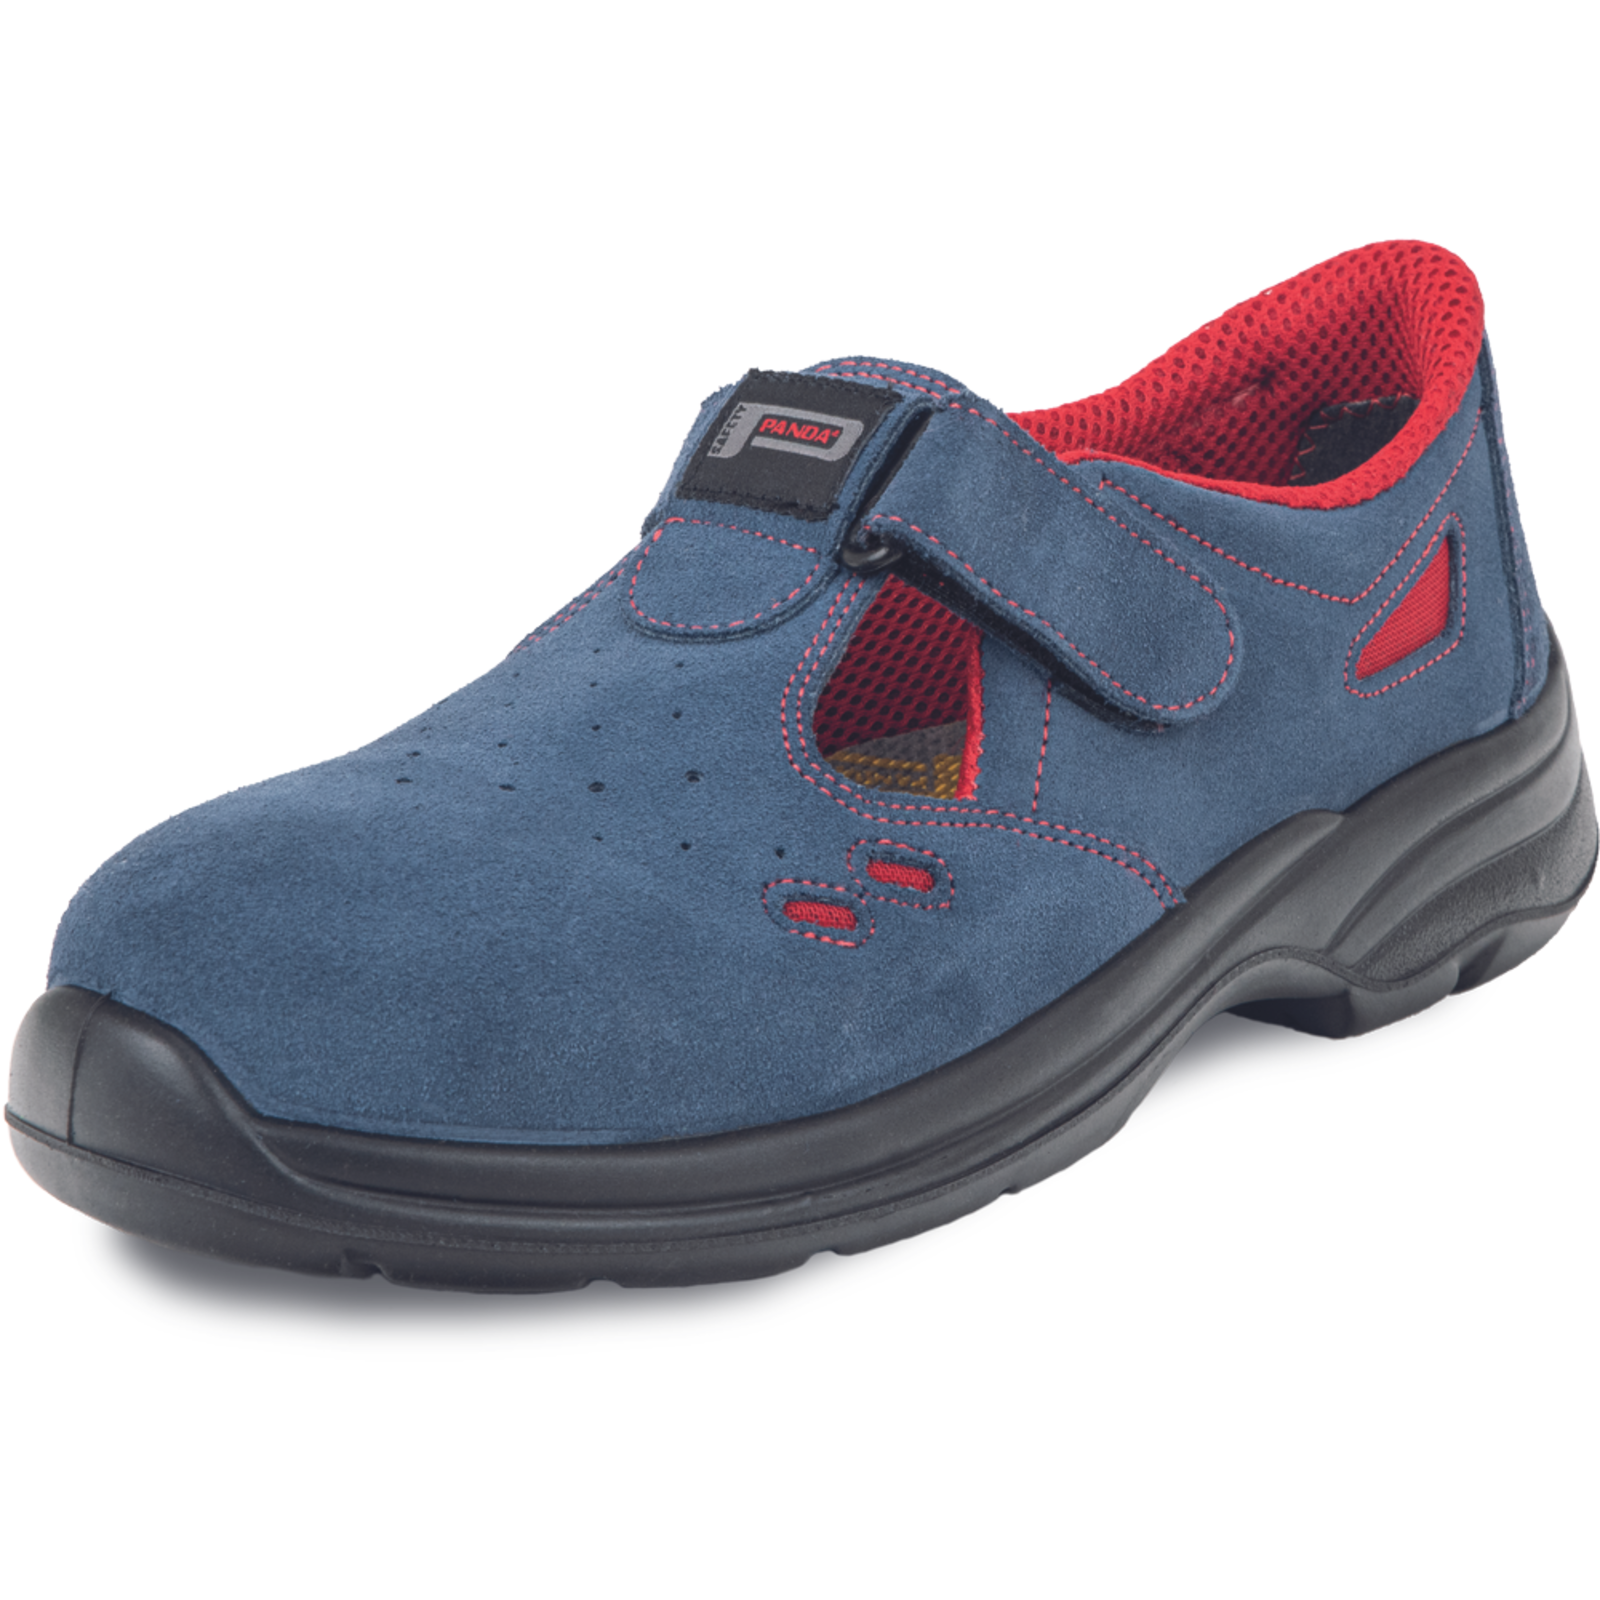 Pracovné bezpečnostné sandále Panda Ringo MF S1 SRC - veľkosť: 37, farba: modrá/červená